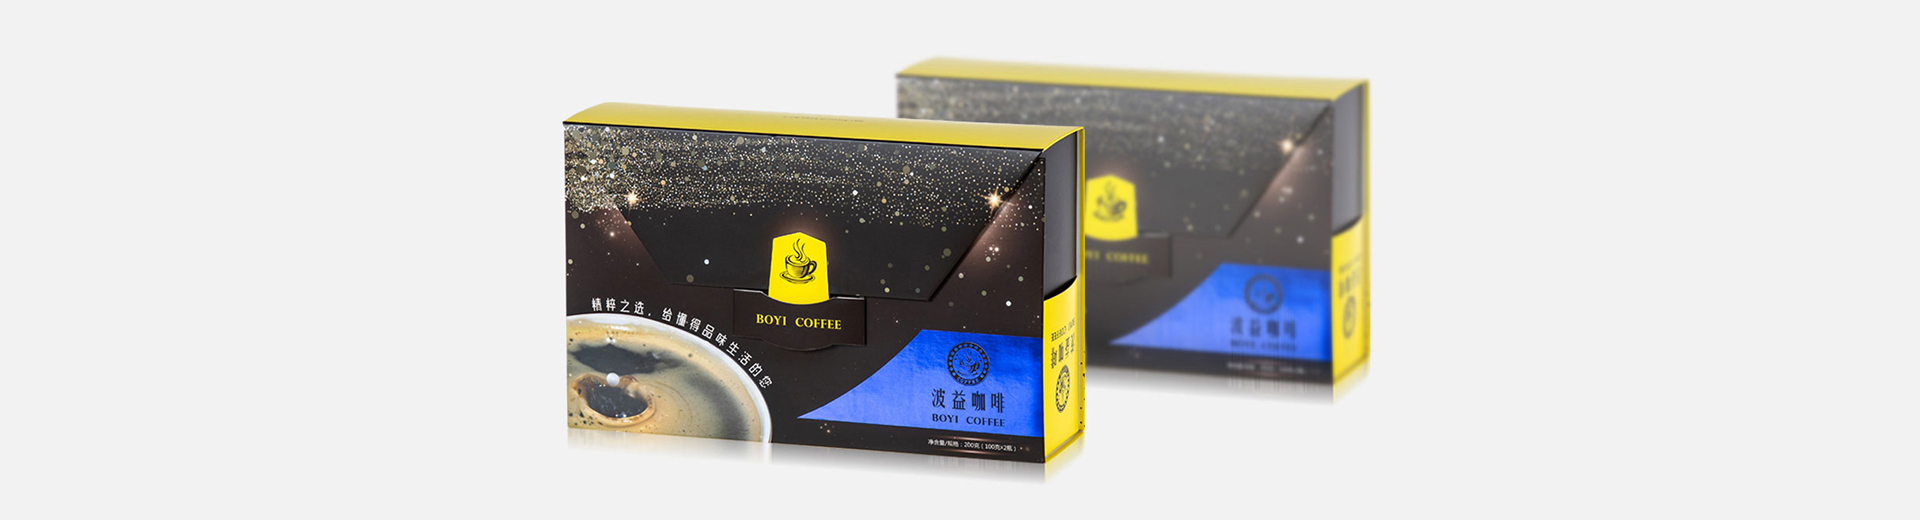 OEM Custom Design Personalizzato Carton di carte grandi e nere di lusso Produttore China Tea Box Packaging